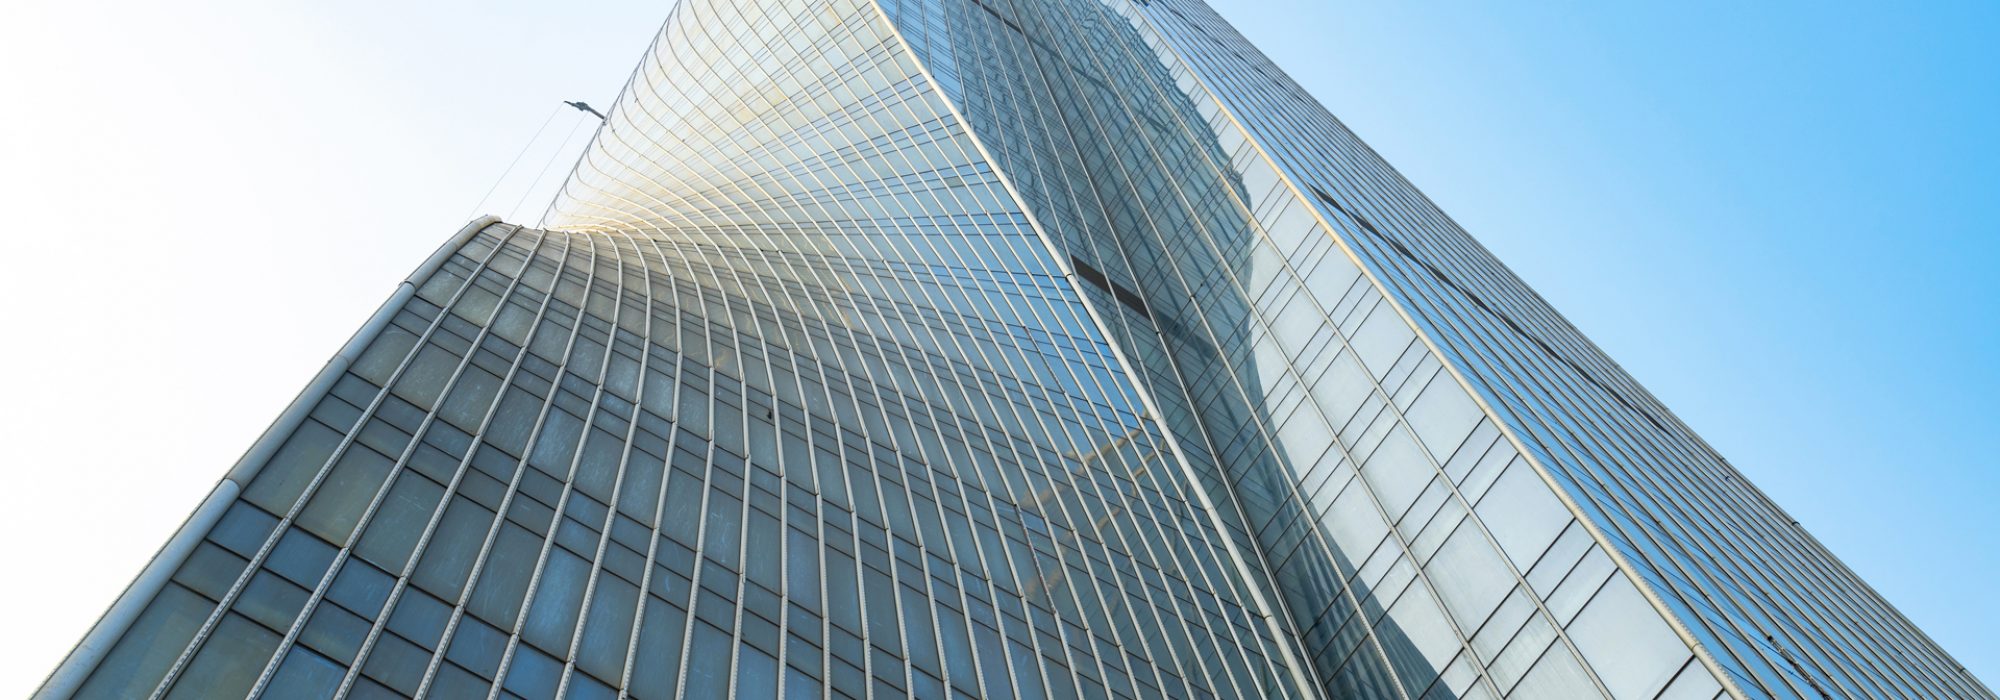 Financial center skyscraper